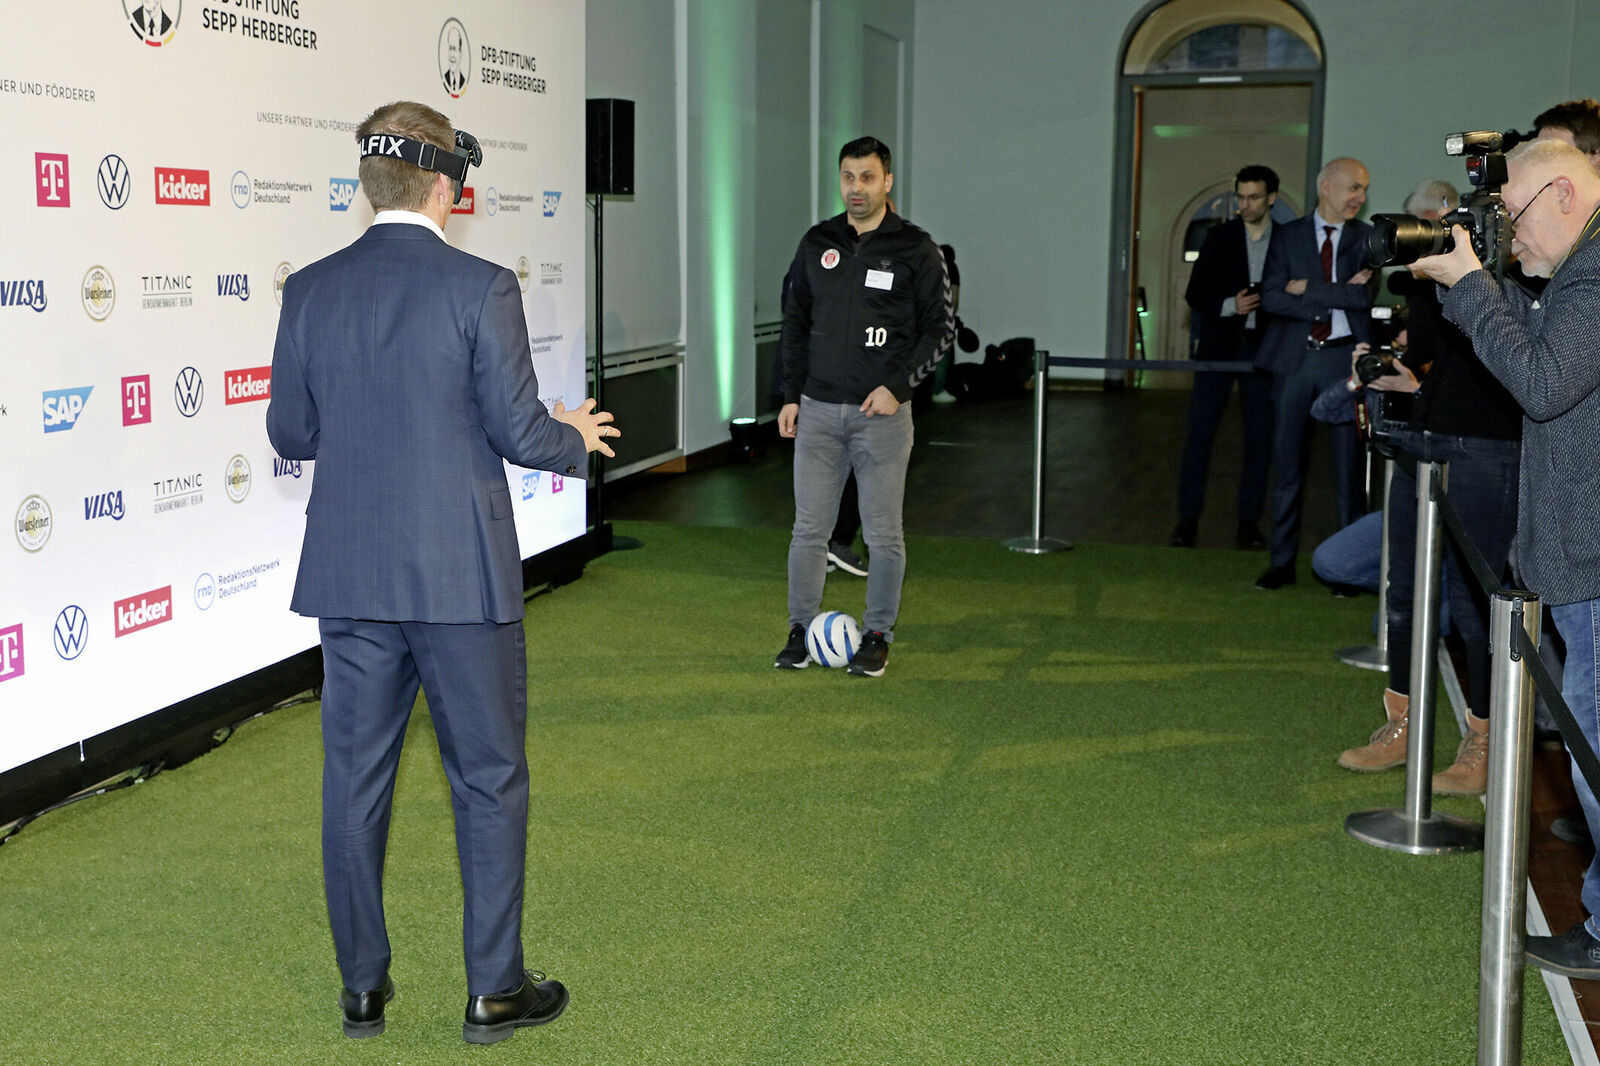 Übung macht den Meister: Der ehemalige Nationalspieler Philipp Lahm versucht sich im Blindenfußball.